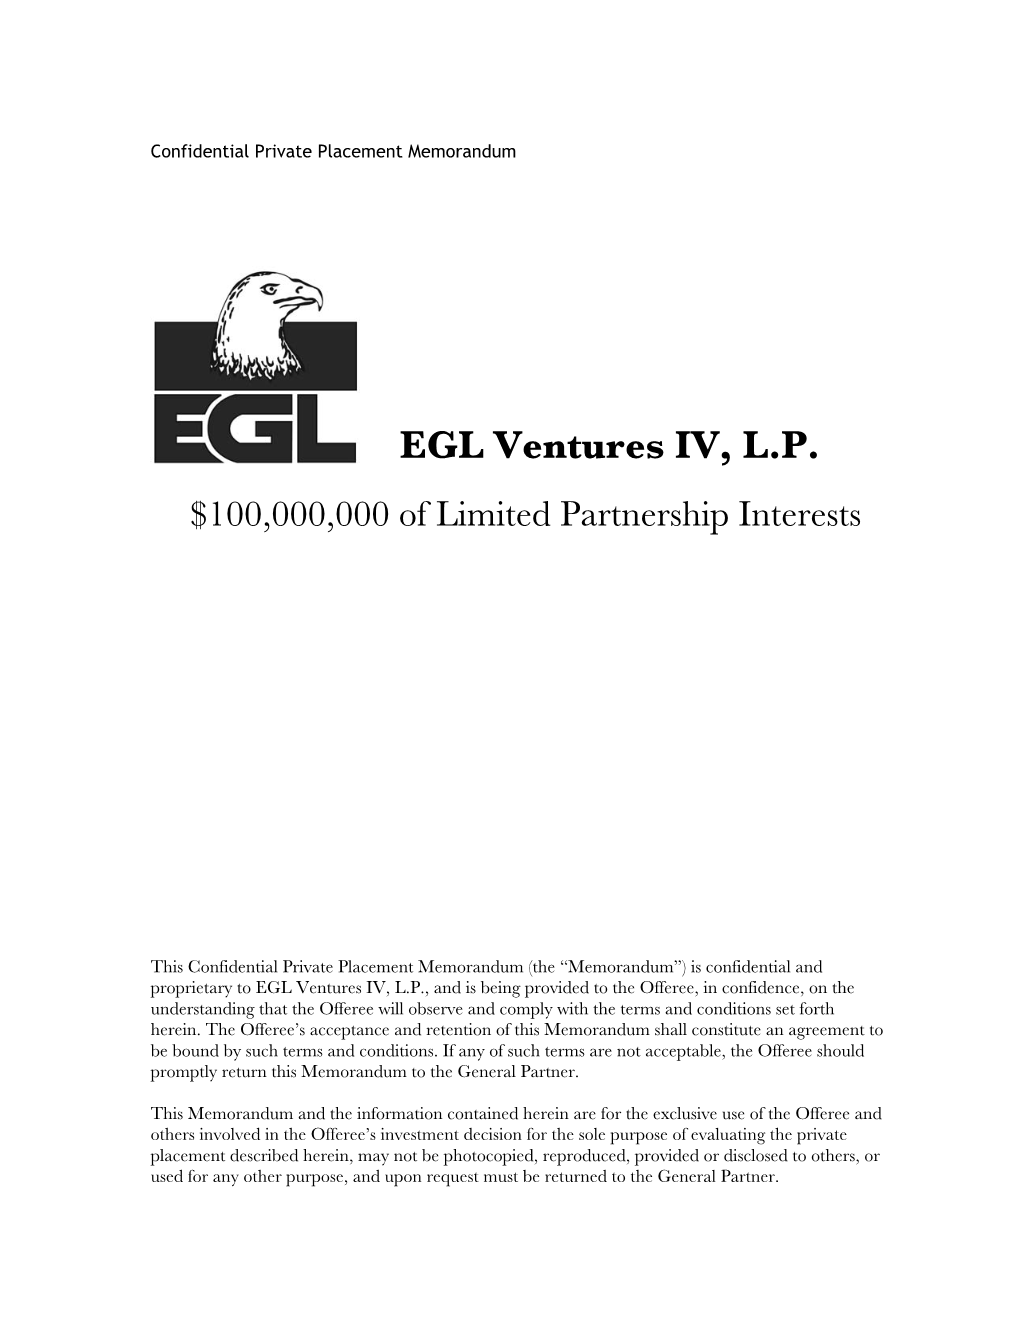 EGL Ventures IV, LP Private Placement Memorandum